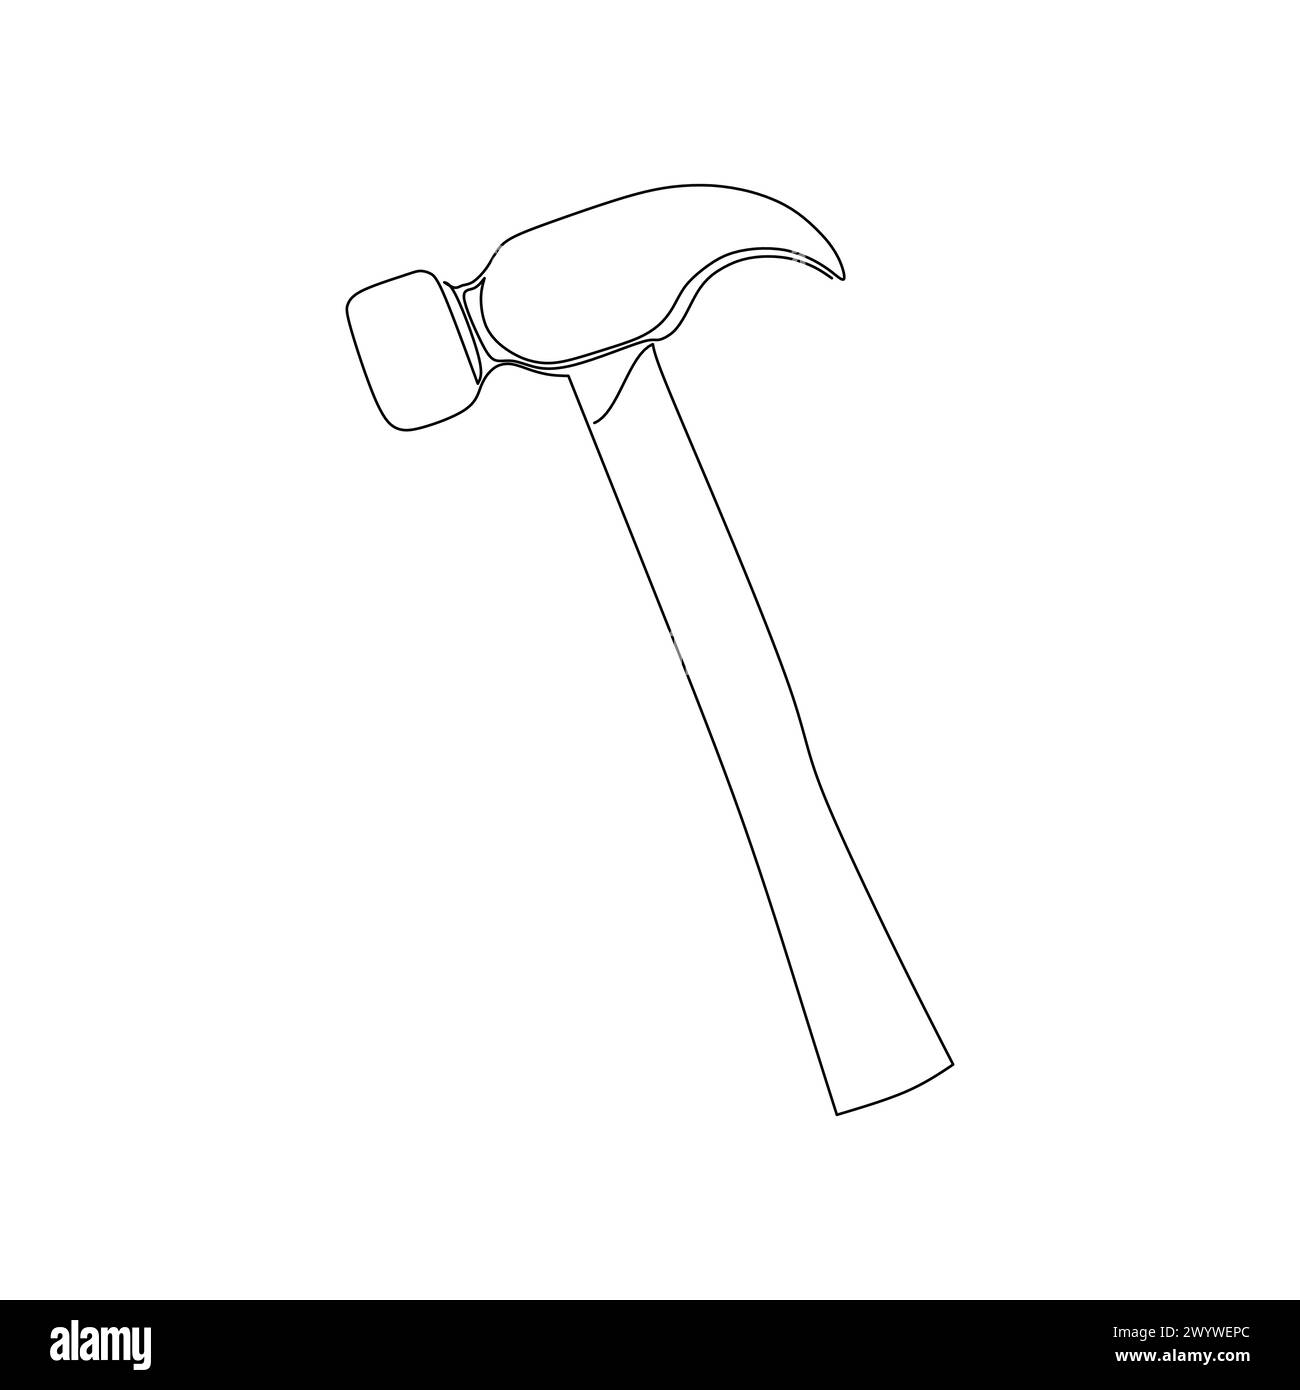 Durchgehende Linienzeichnung eines Hammers. Einfacher, flacher, handgezeichneter Vektor für Werkzeuge in Konstruktion und Konstruktion Stock Vektor